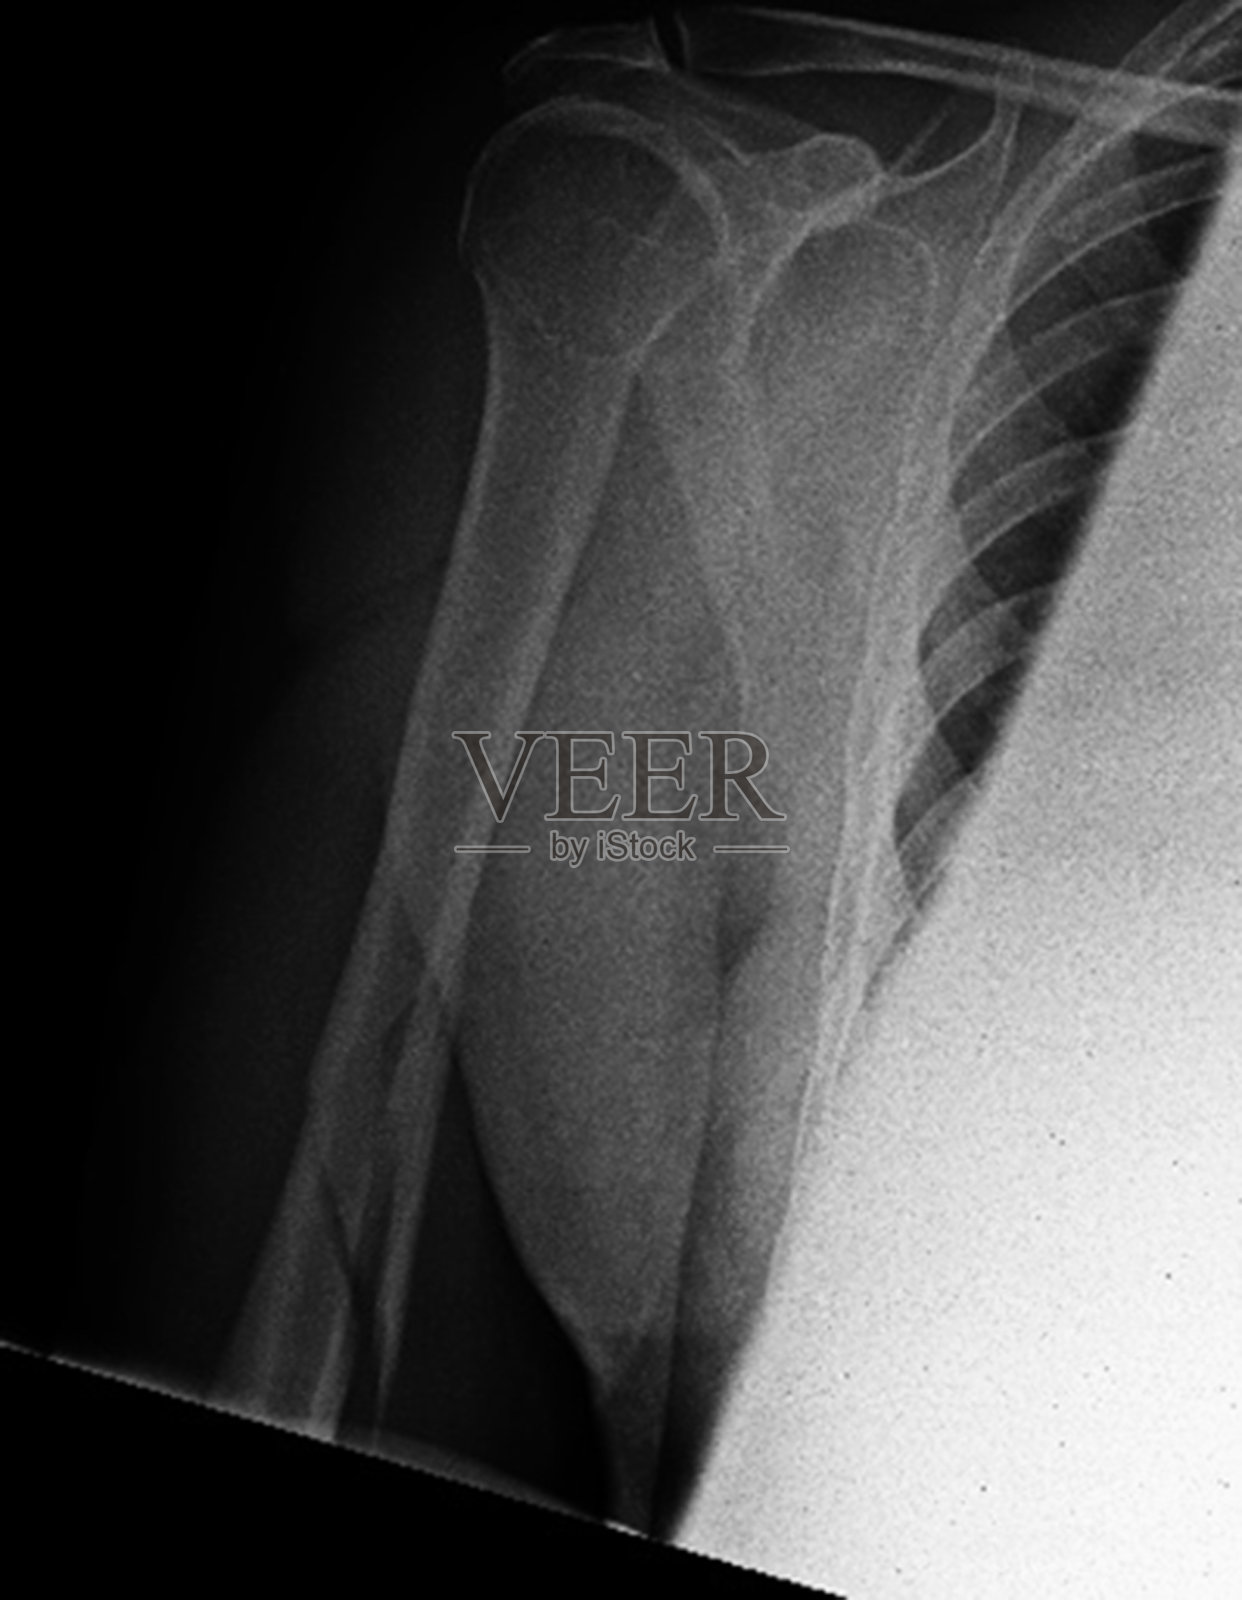 x线骨折肱骨3照片摄影图片